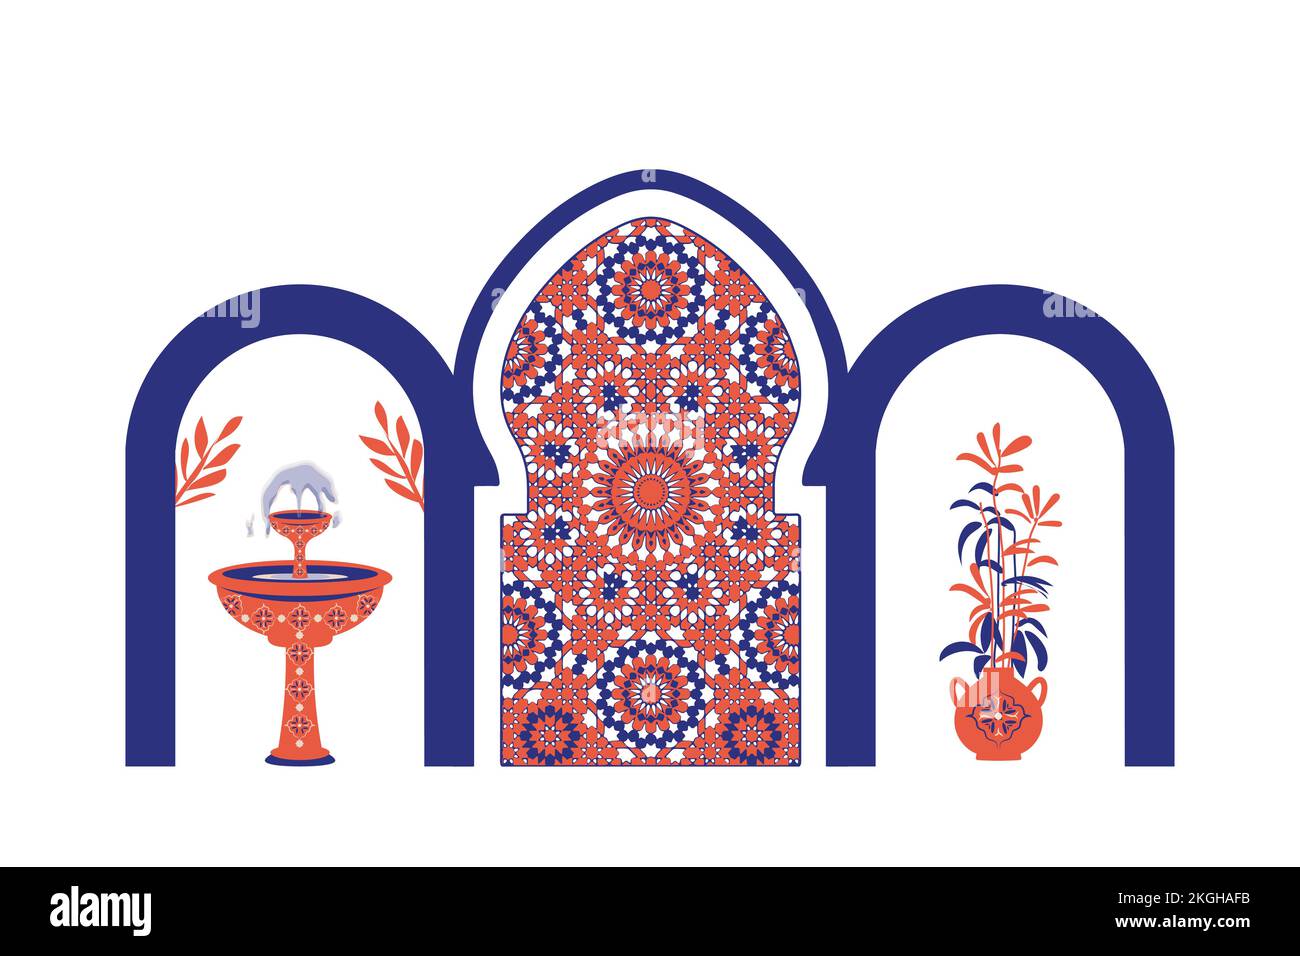 Abstrakte Architektur Poster mit einfacher geometrischer Darstellung. Marokkanische zeitgenössische abstrakte Geometrie. Fenster, Türen und Treppen im islamisch-arabischen orientalischen Stil. Stock Vektor